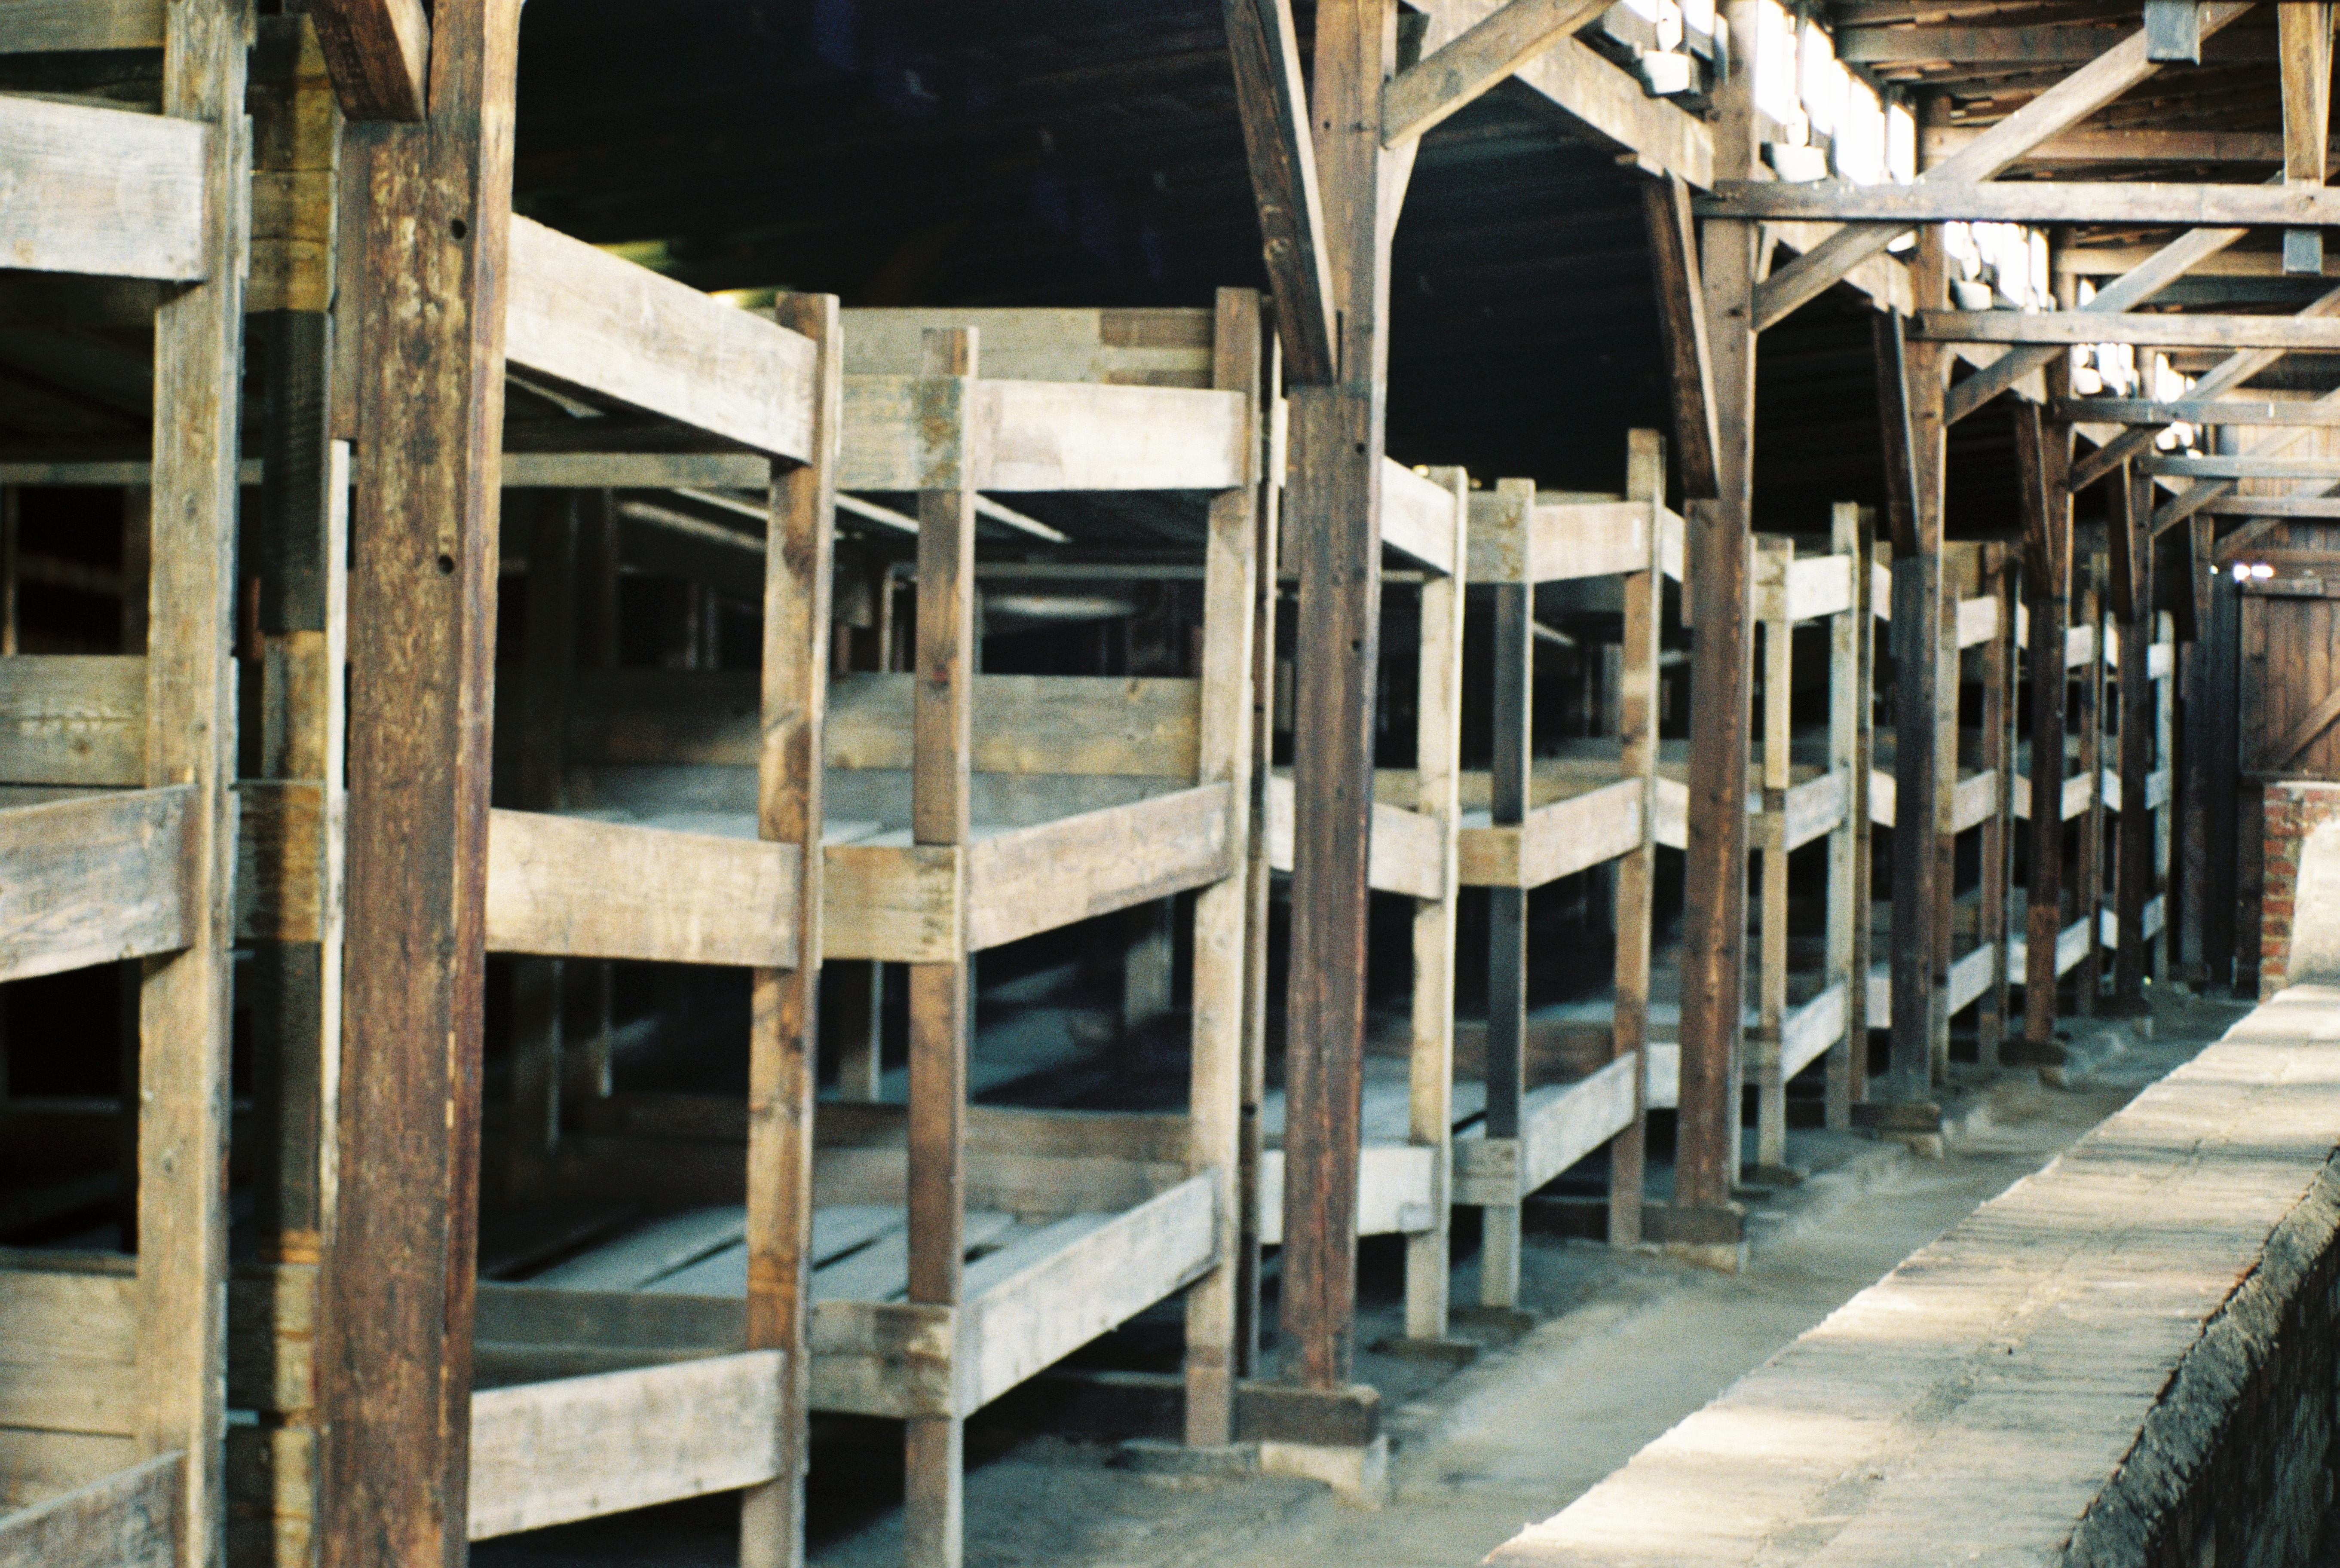 Beds of the prisoners in the barracks of Auschwitz Birkenau, Betten der HÃ¤ftlinge in den Baracken von Auschwitz Birkenau